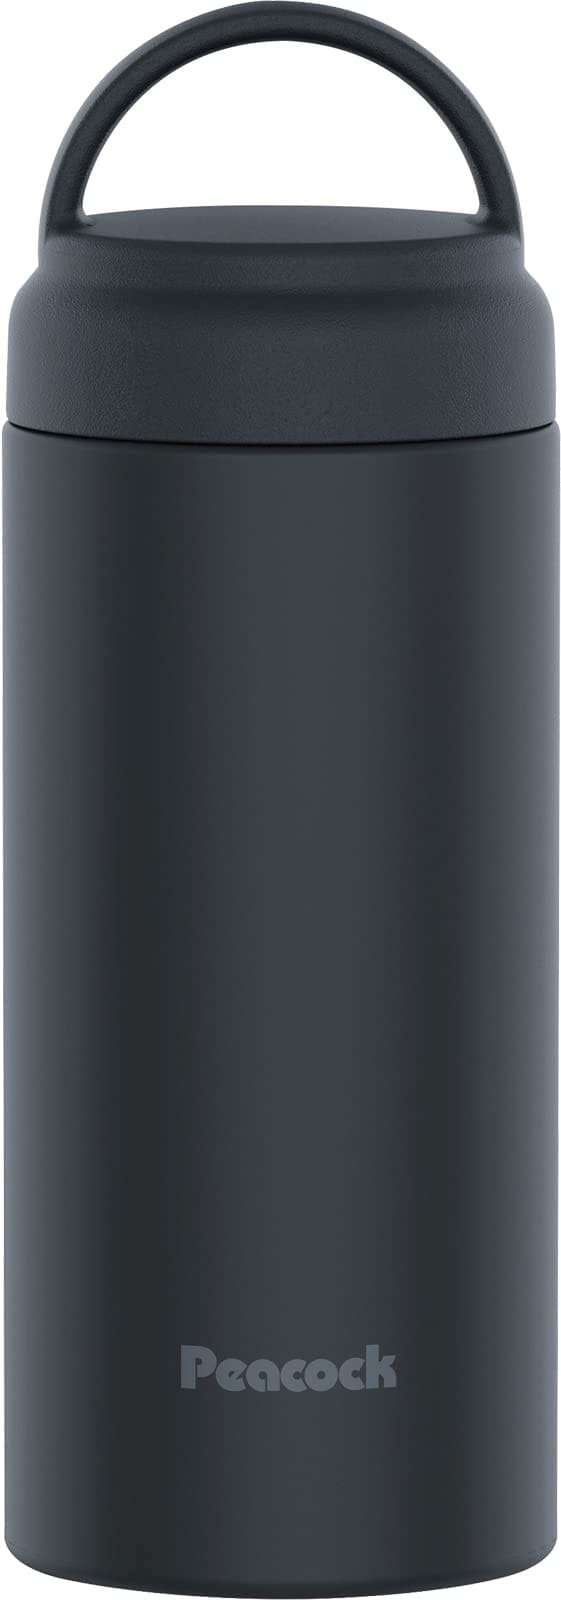 ピーコック 水筒 ステンレス ボトル スクリューマグボトル (ハンドル付き) 保温 保冷 350ml チャコールグレー AKZ-35 HCH